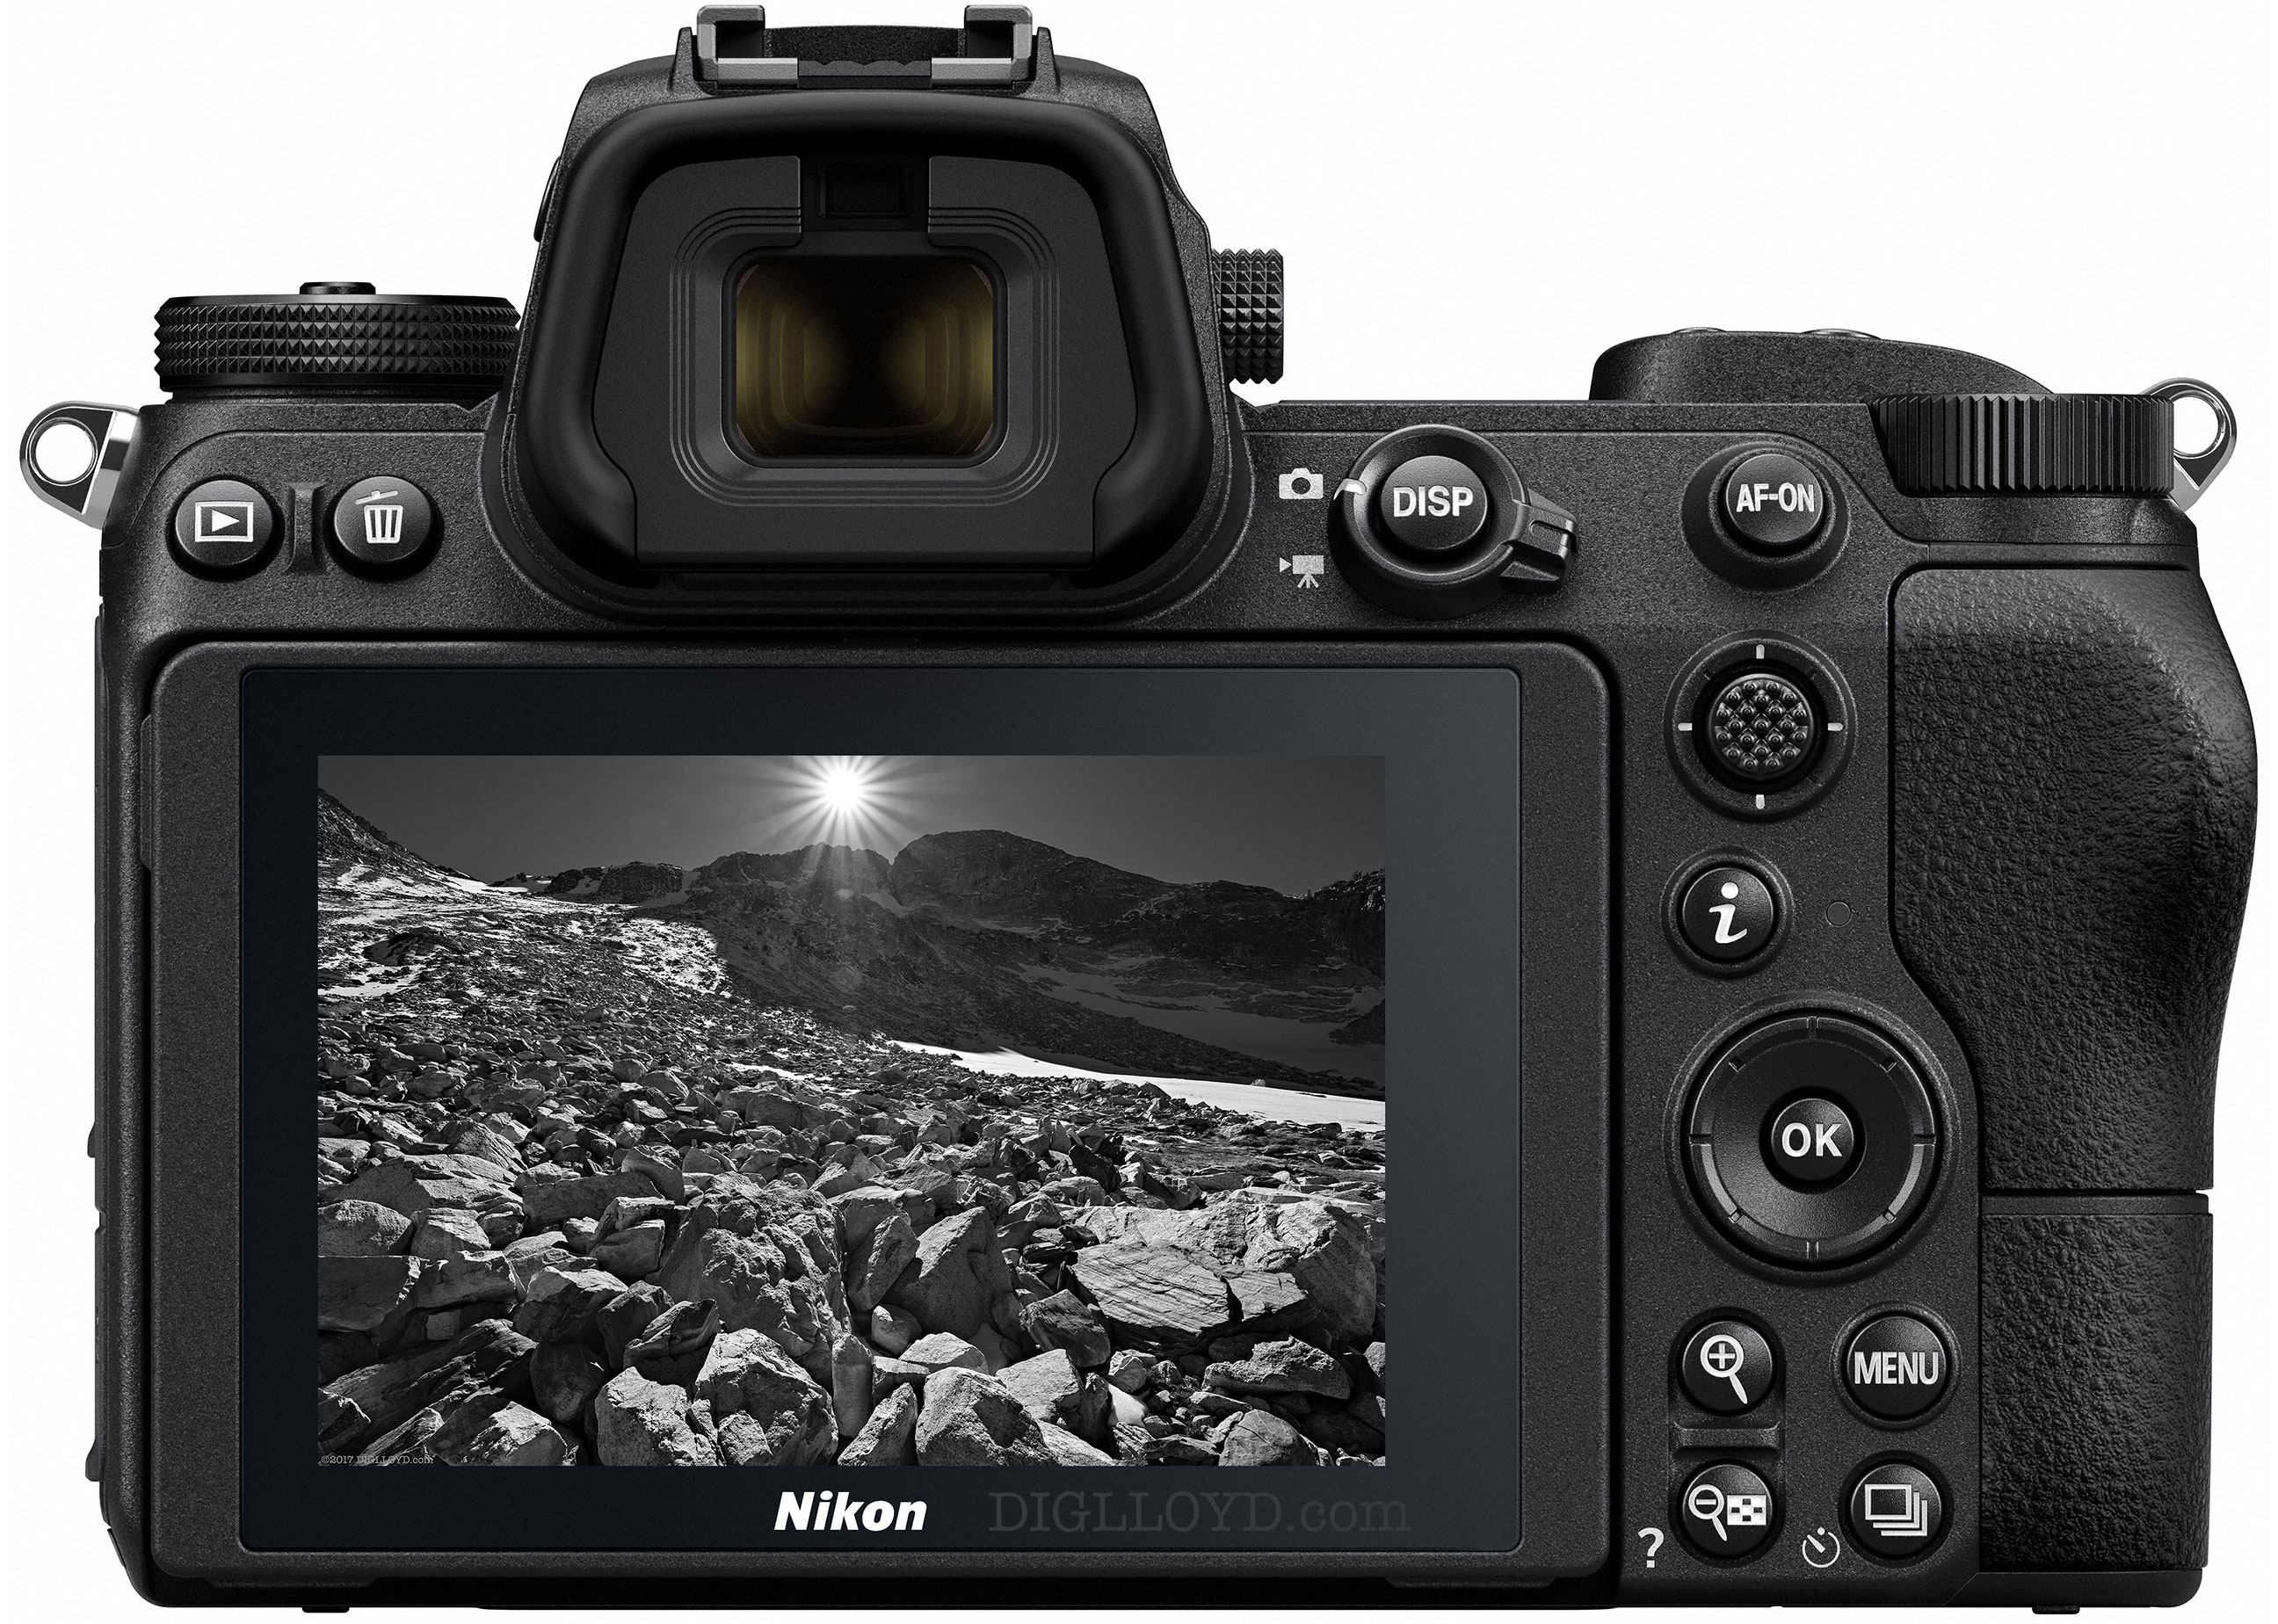 image of Nikon Z7